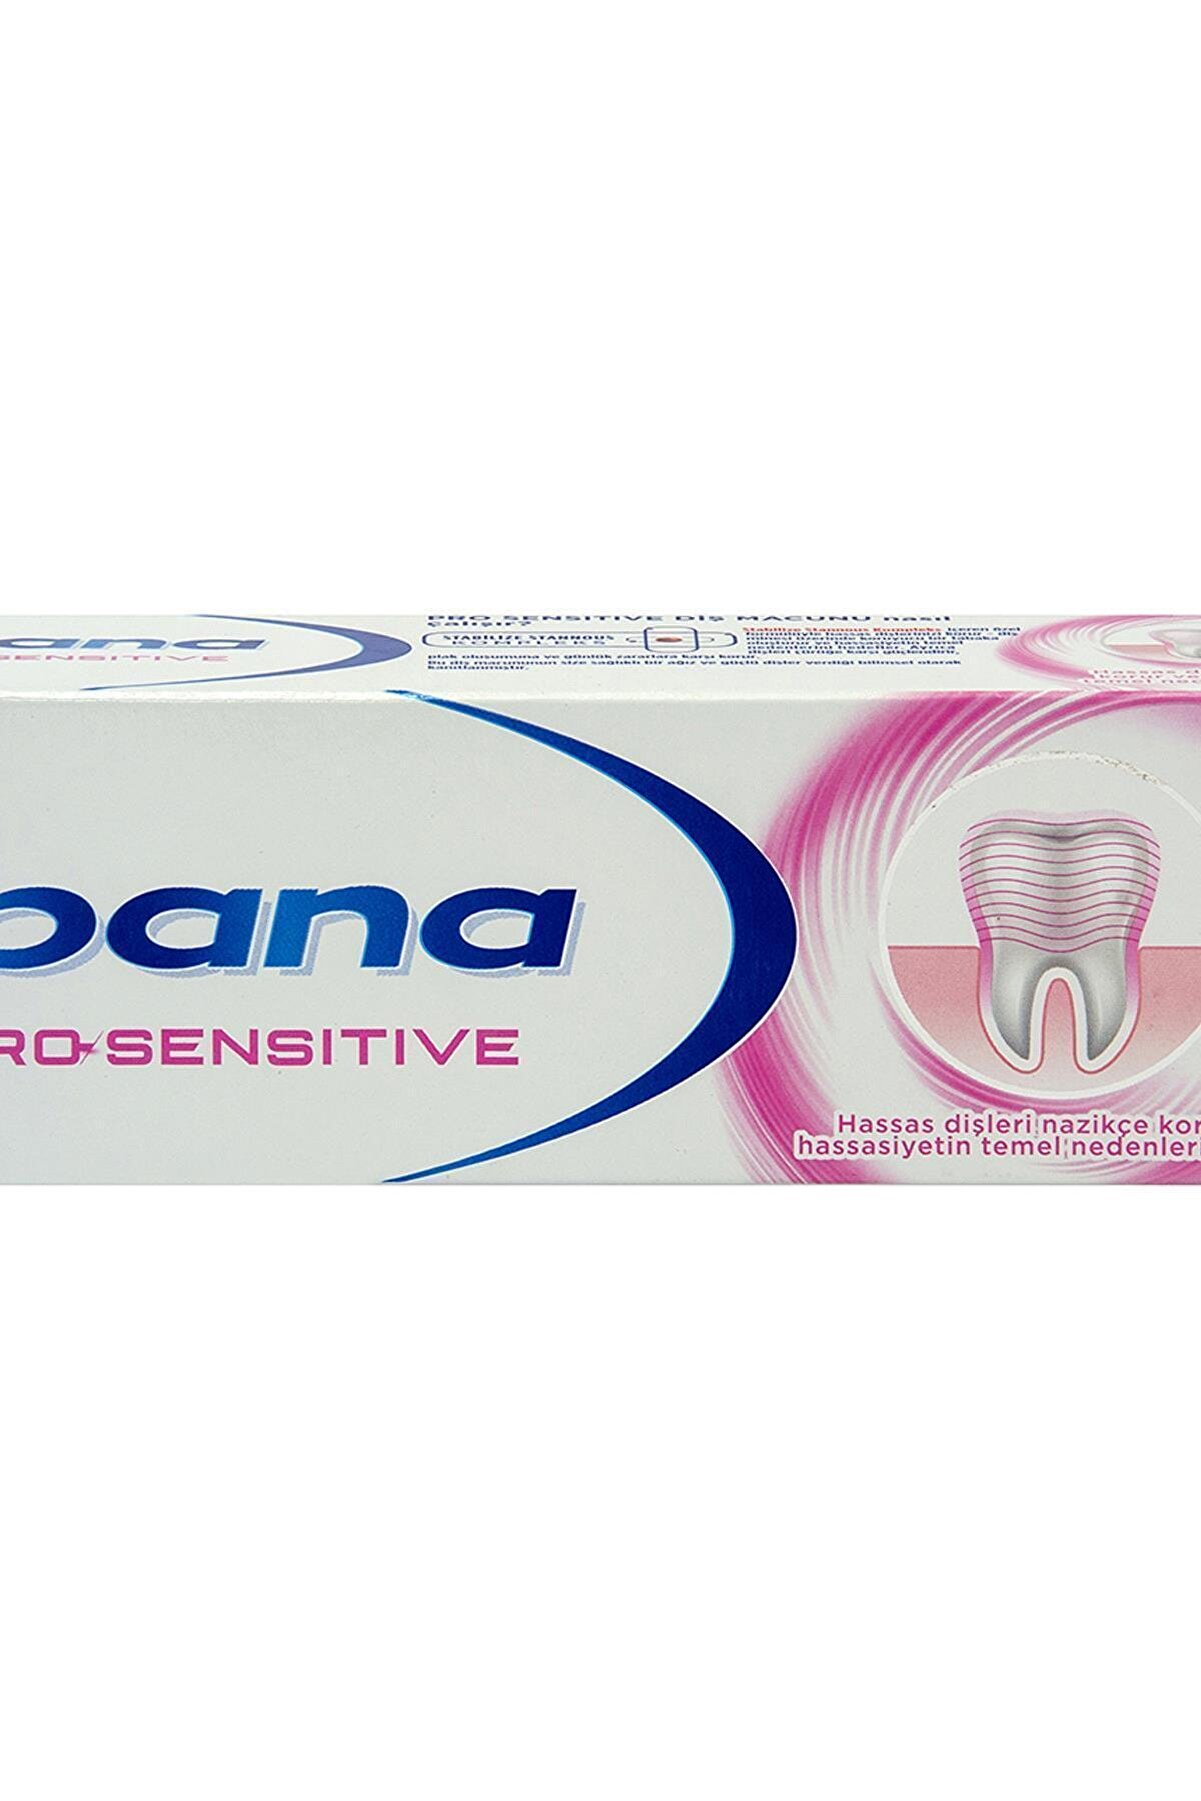 İpana Marka: Ipana Pro-sensitive 75ml Kategori: Diş Beyazlatma Ürünü